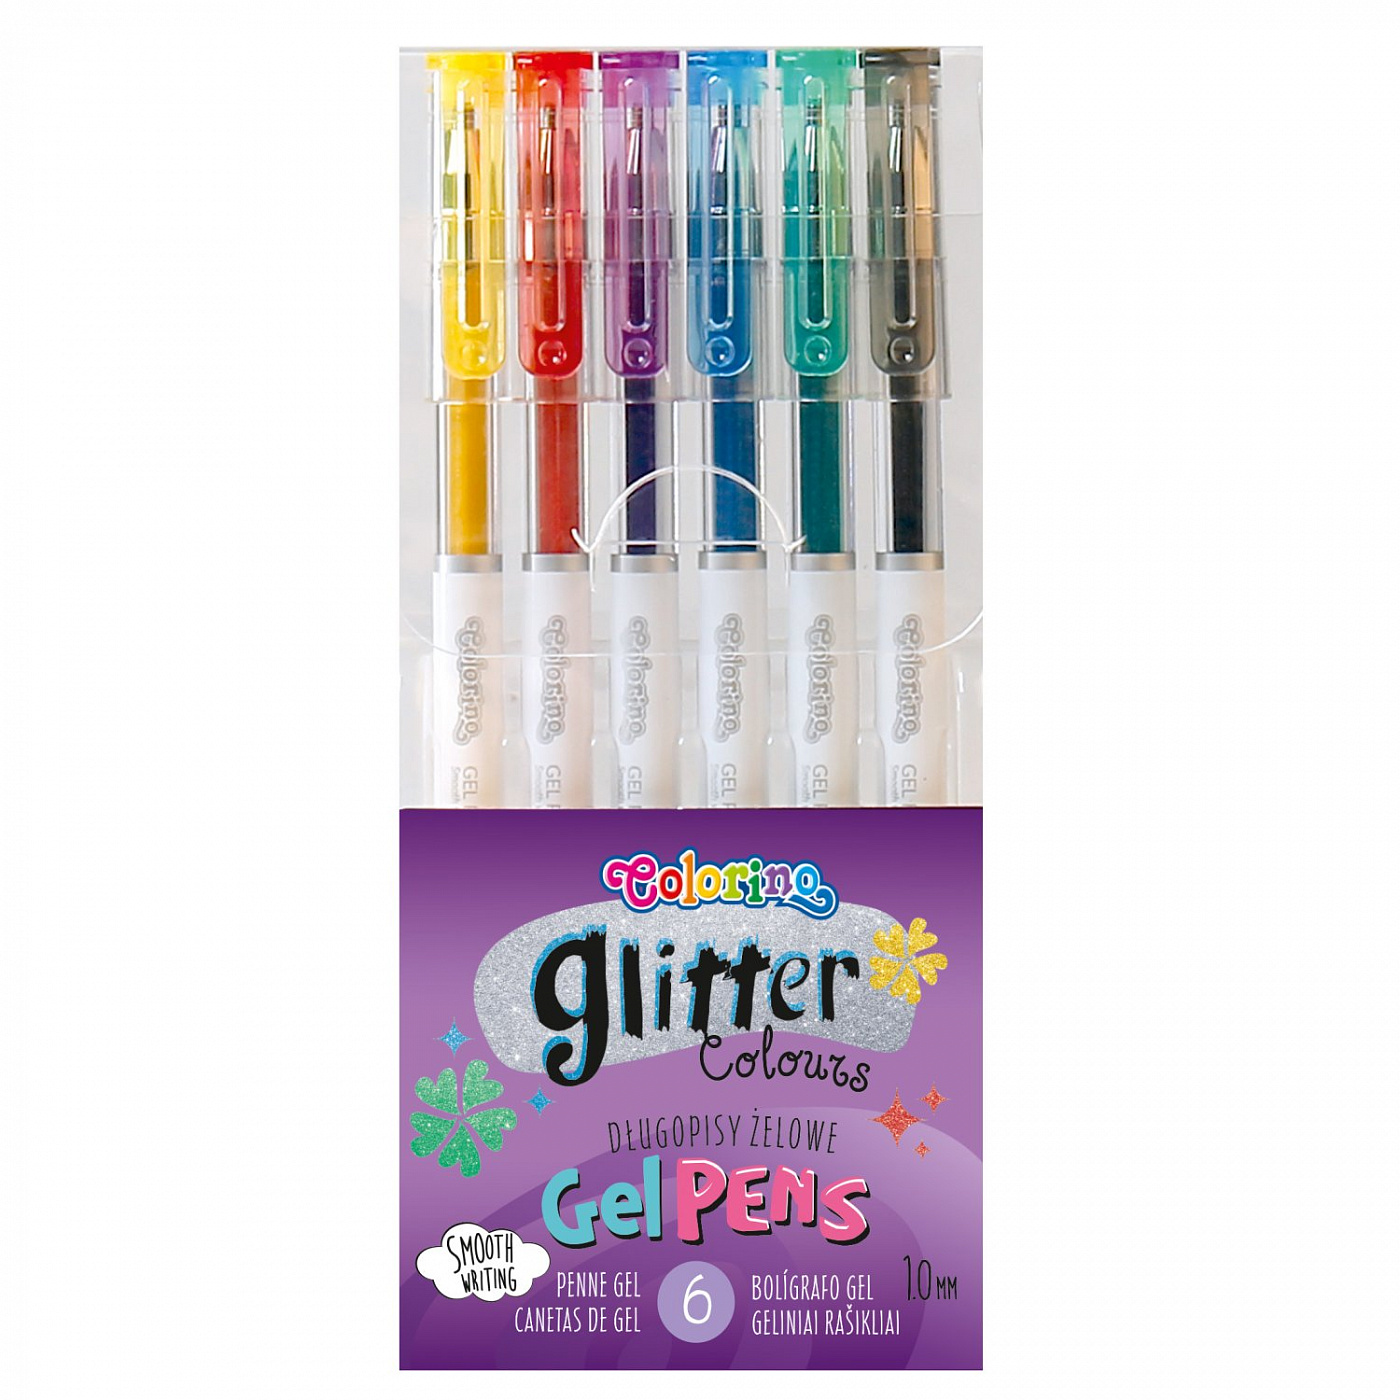 Набор гелевых ручек Colorino, 6 цветов с глиттерами набор для творчества аппликация из мягкого пластика eva пароход